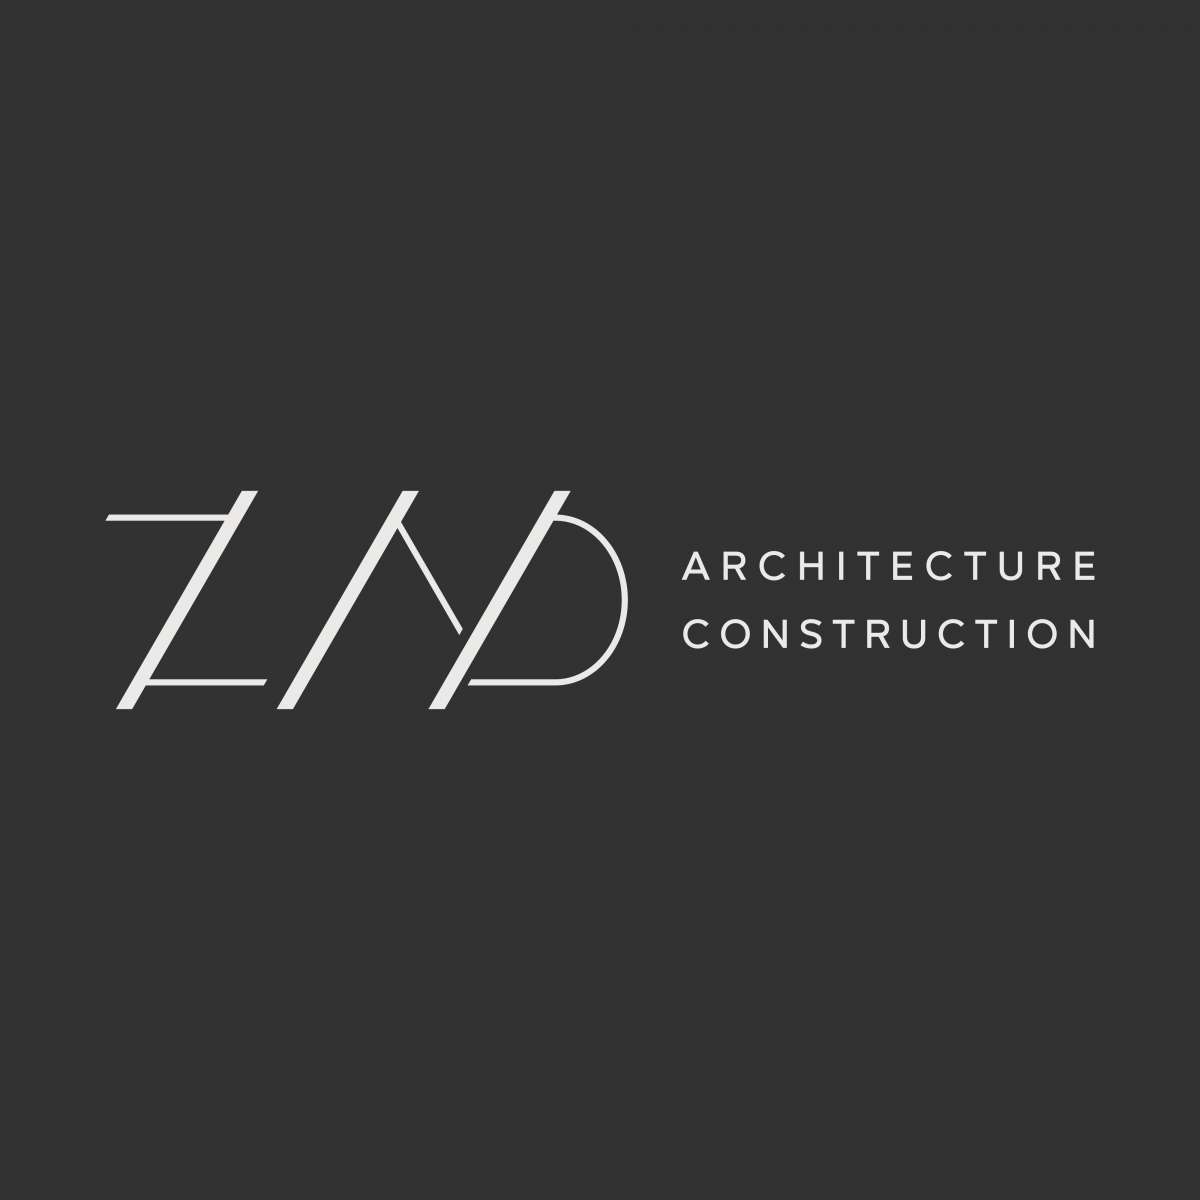 ZAD Archicteture and Construction - Lisboa - Instalação de Pavimento em Pedra ou Ladrilho